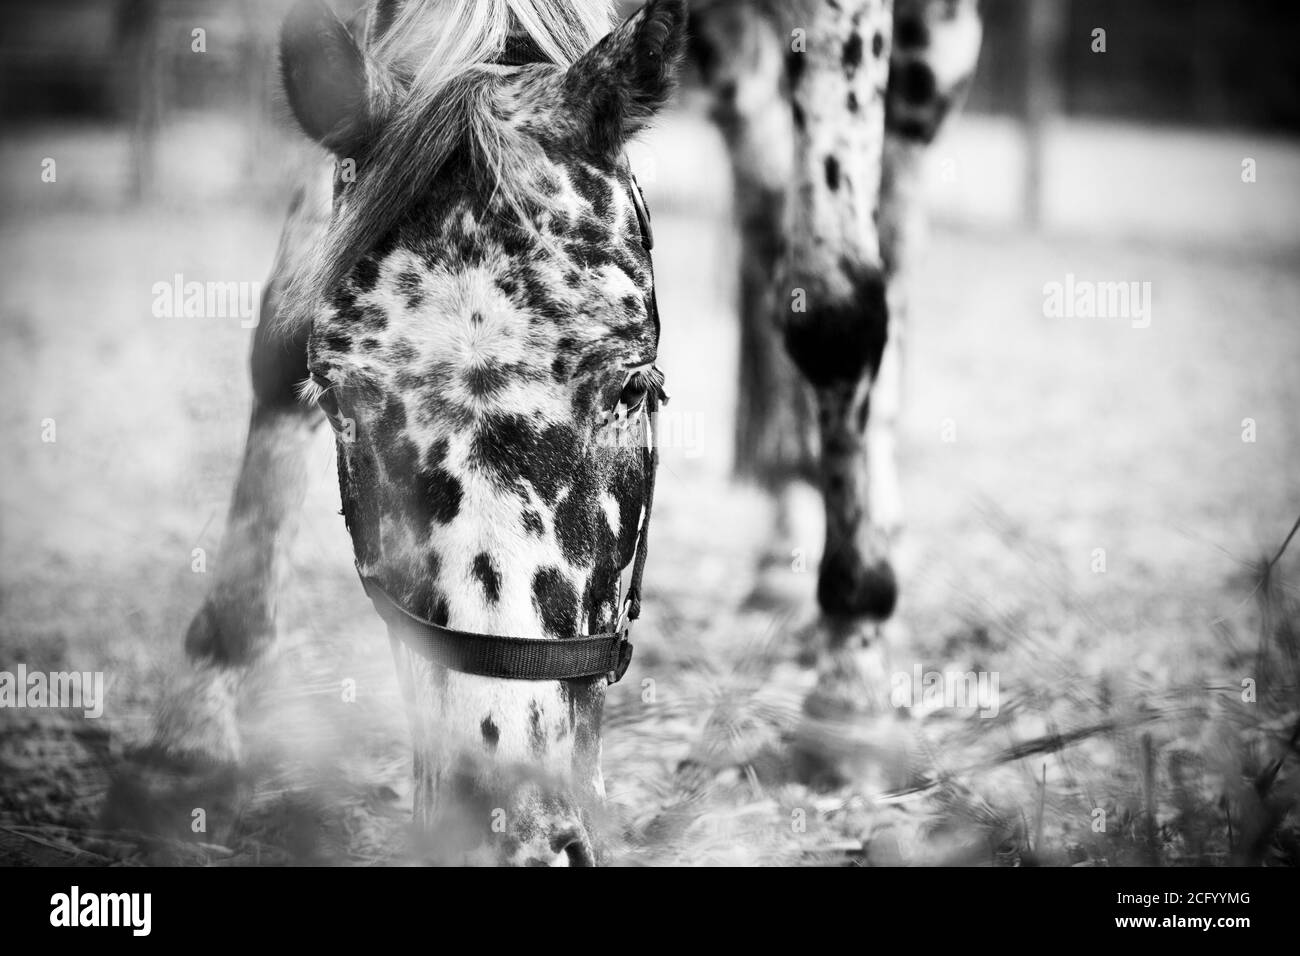 Portrait noir et blanc d'un beau cheval tacheté avec un halter sur son museau, qui mange de l'herbe et regarde avec intérêt. Le cheval broute. Banque D'Images